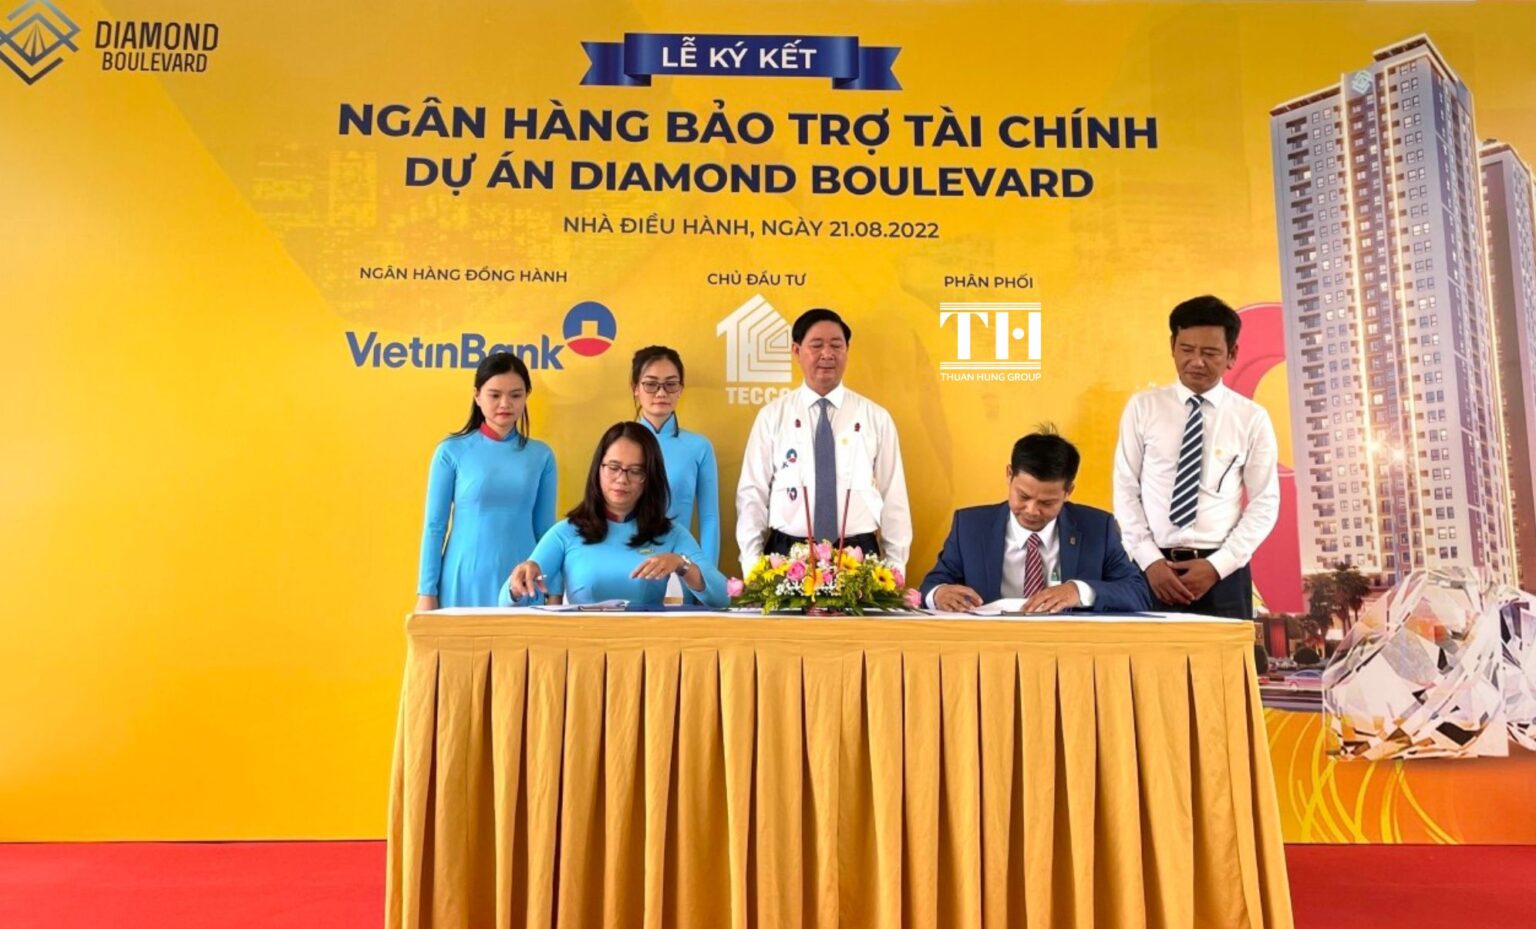 Diamond Boulevard - Vietinbank signing ceremony